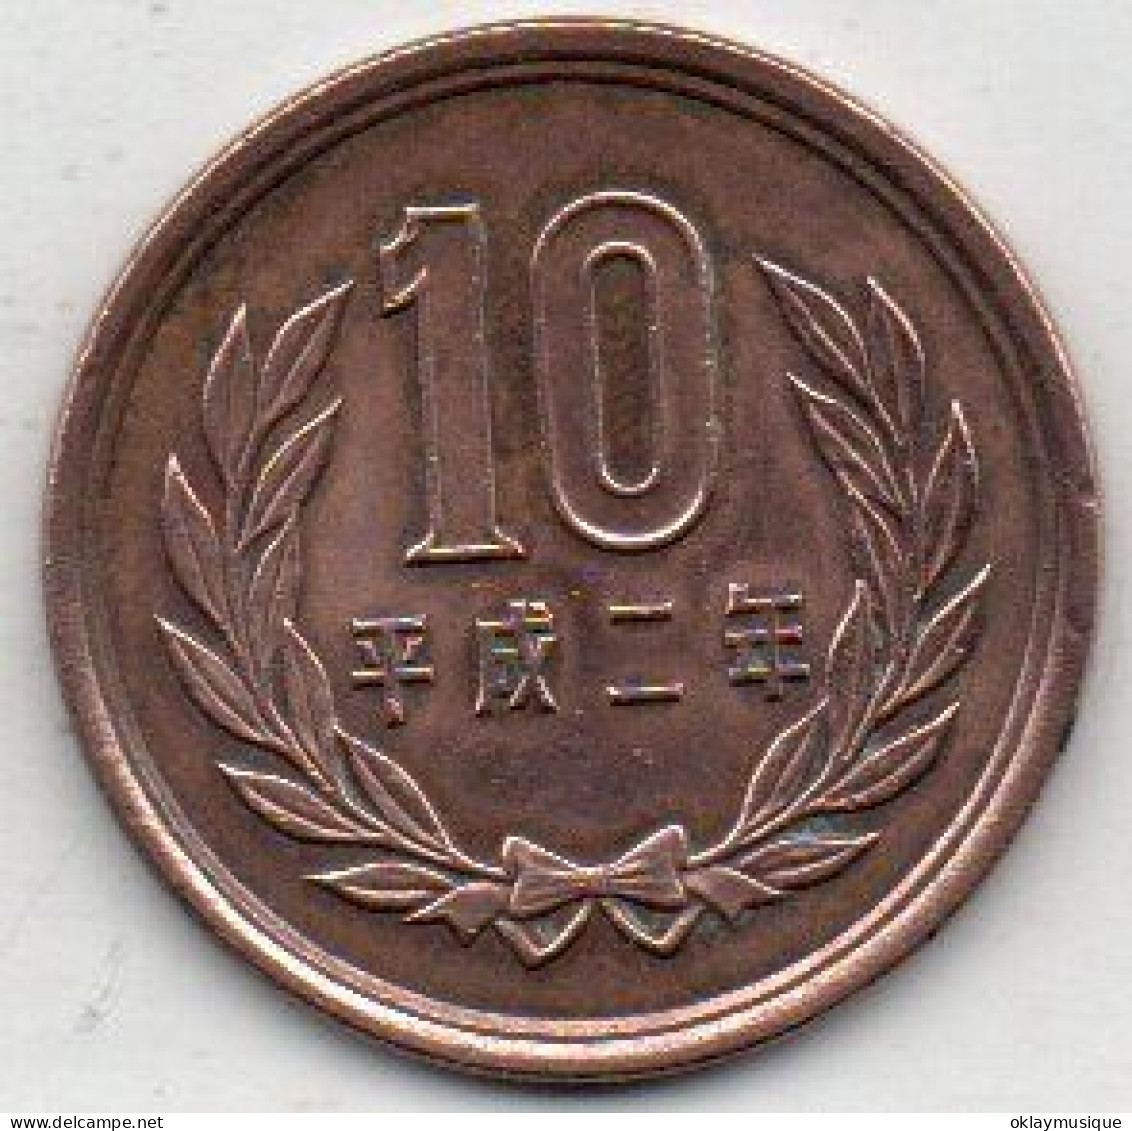 10 Yen (heisei) 1951-58 - Japan